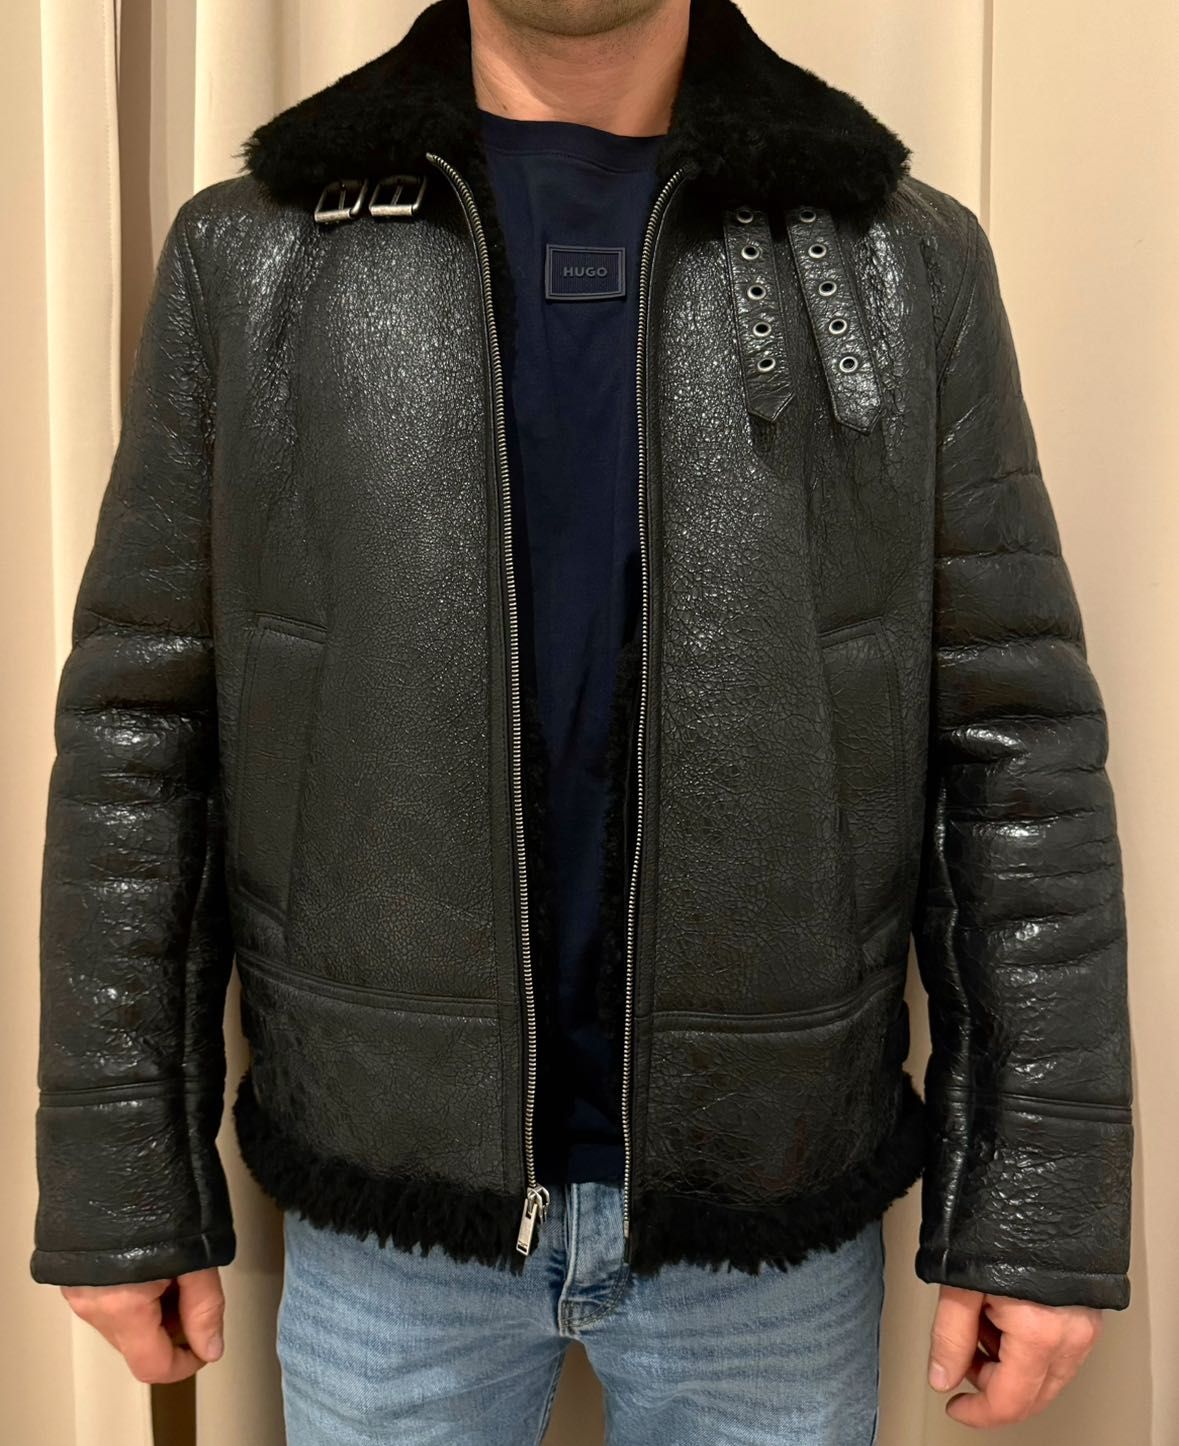 Saint Laurent black Aviator jacket